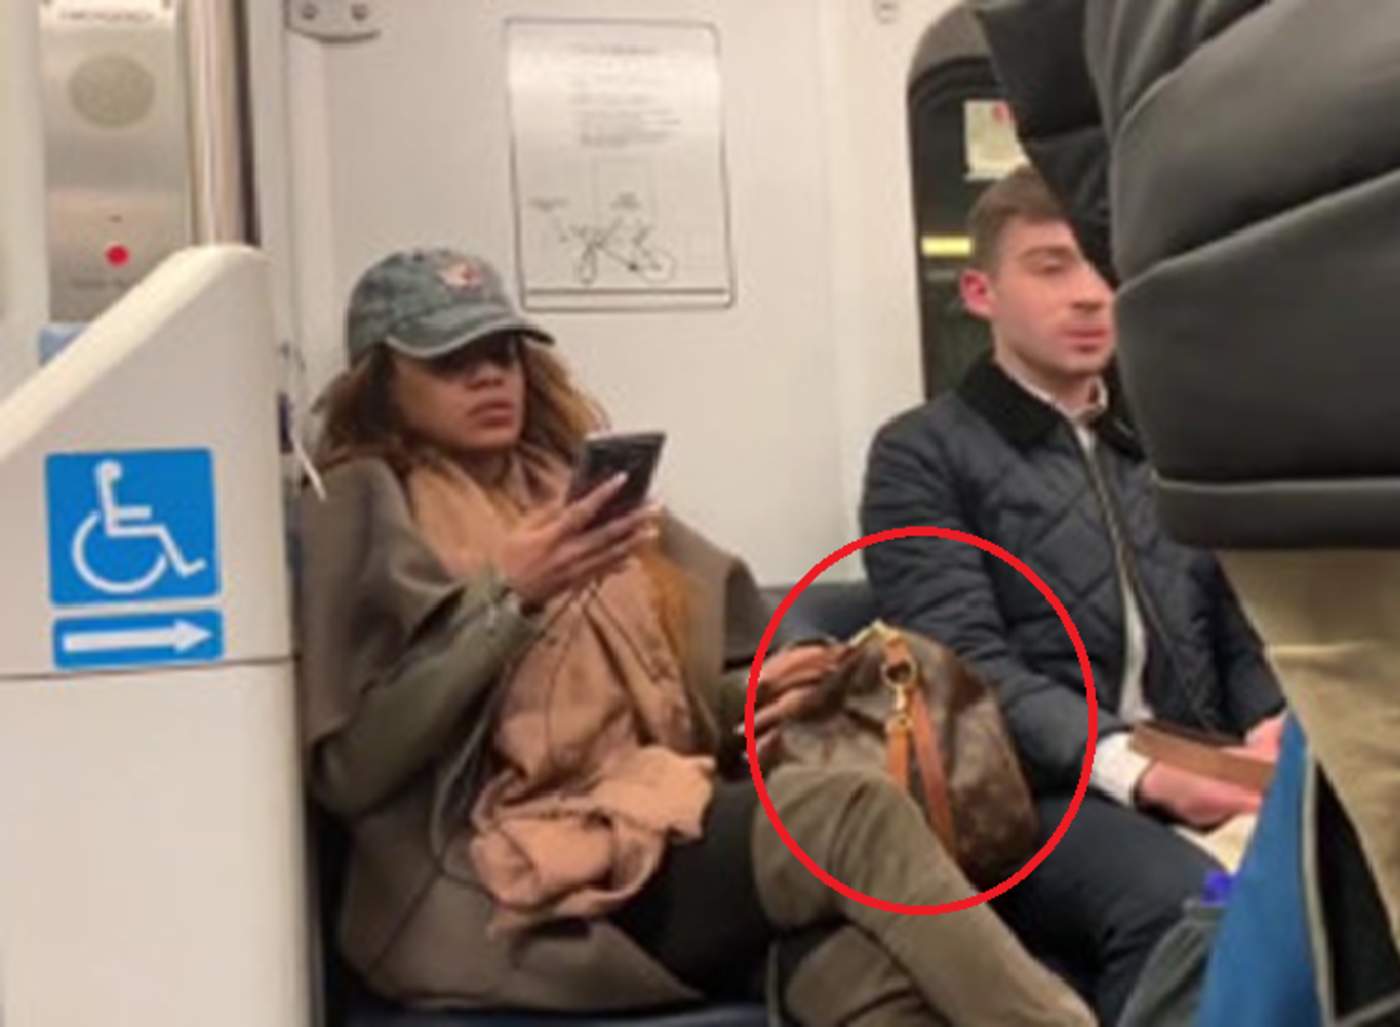 Mujer se rehúsa a mover su bolsa de marca del asiento del metro